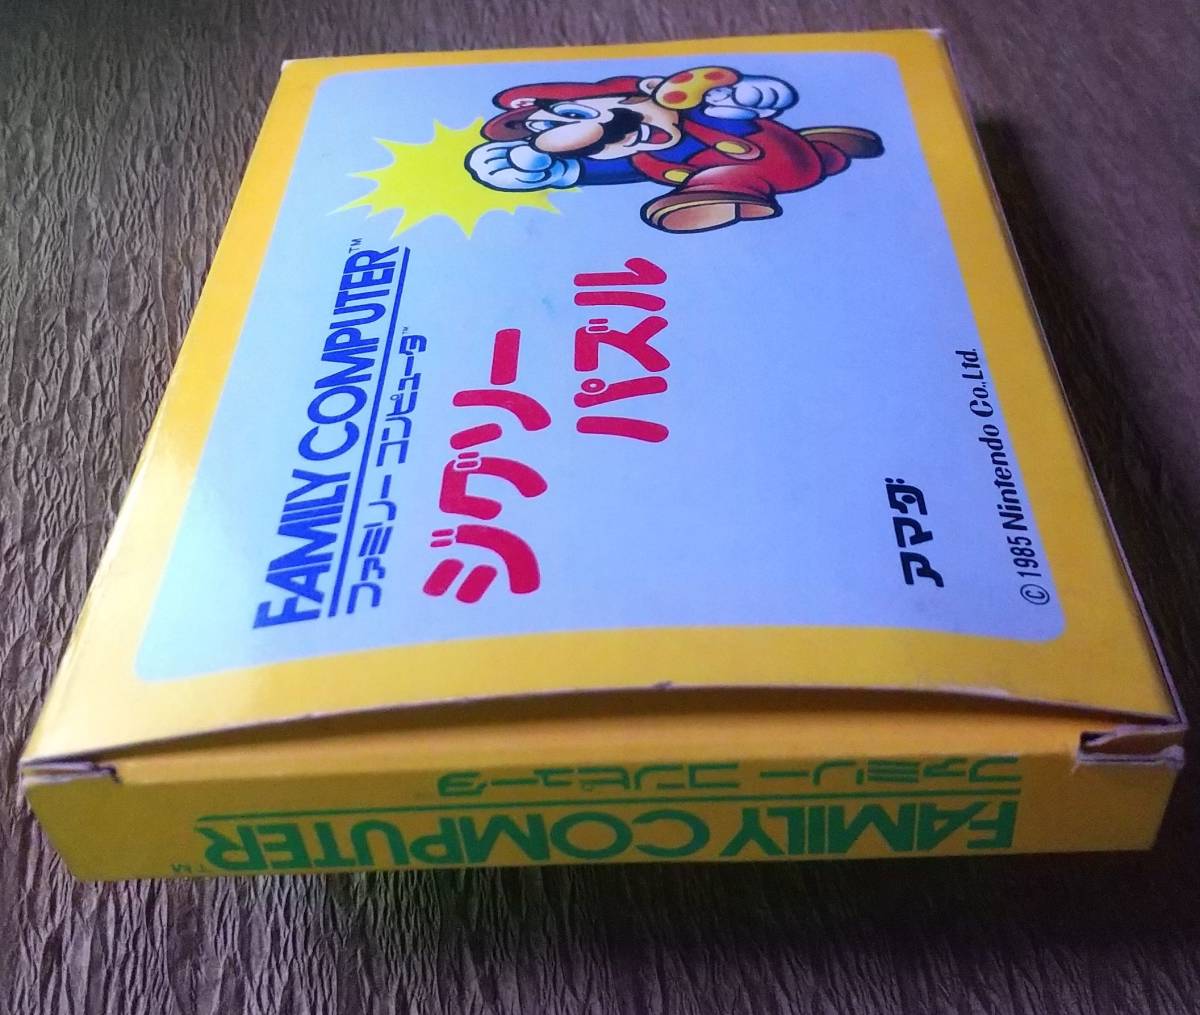  не использовался super Mario составная картинка ( Amada 1985 год )* повреждение много 10×13 см примерно. размер 